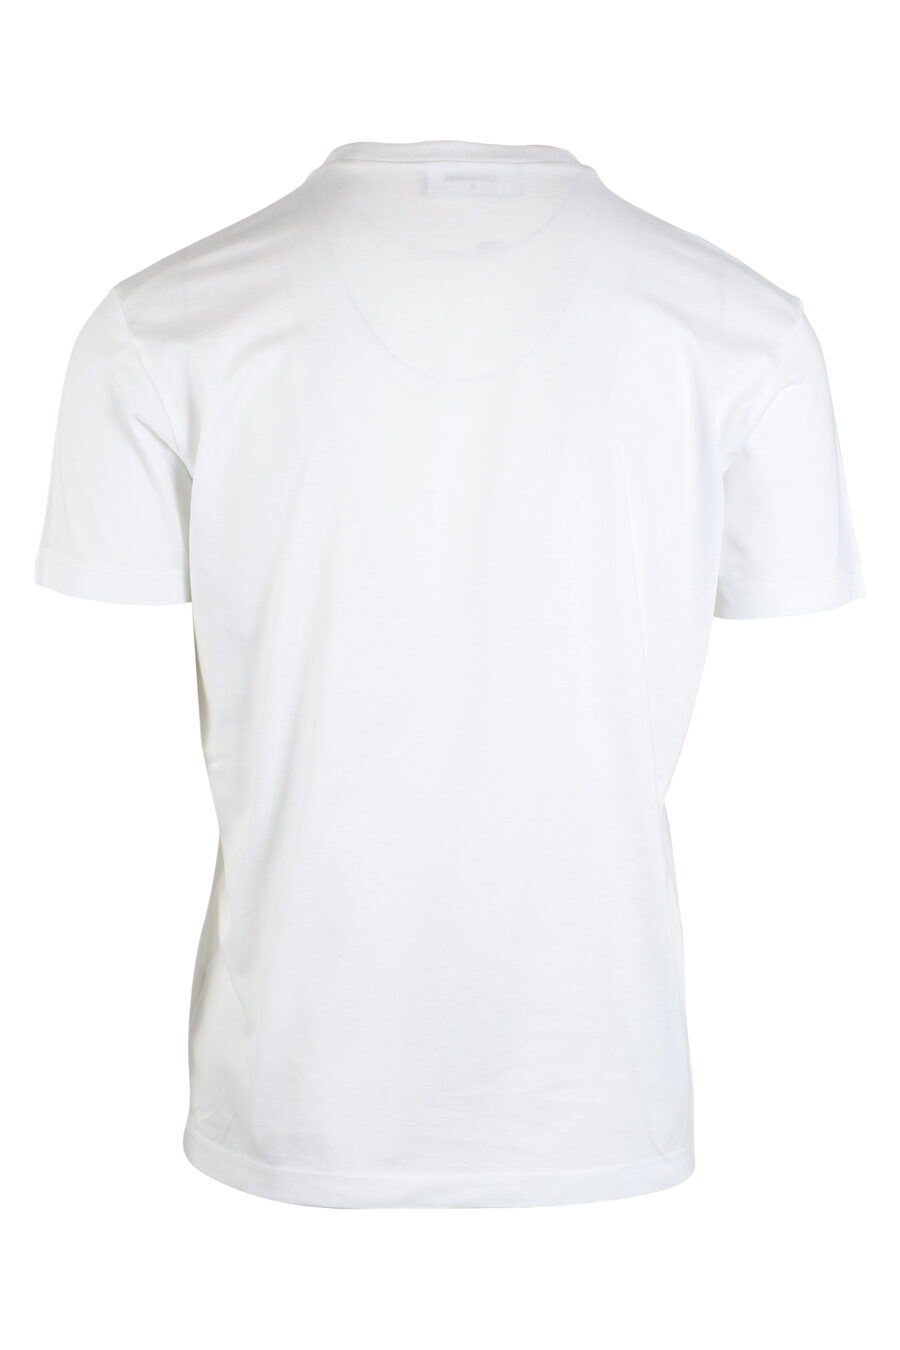 White T-shirt with maxilogo "icon" - IMG 0671